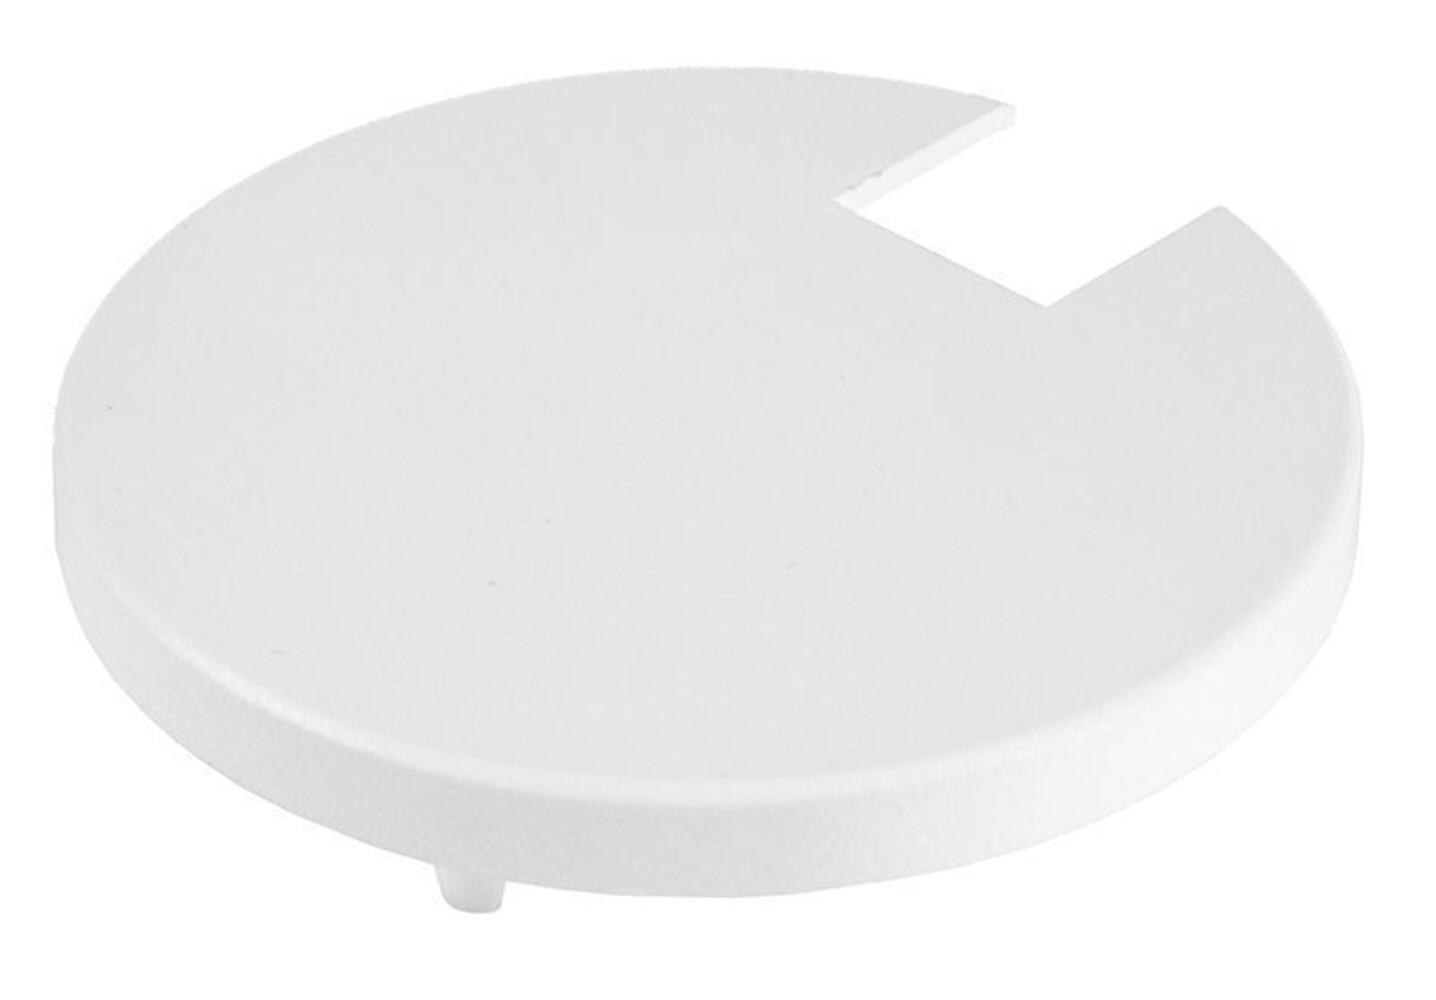 Weiße Abdeckung für Kühlkörper von der Marke Deko-Light aus der Serie Uni II